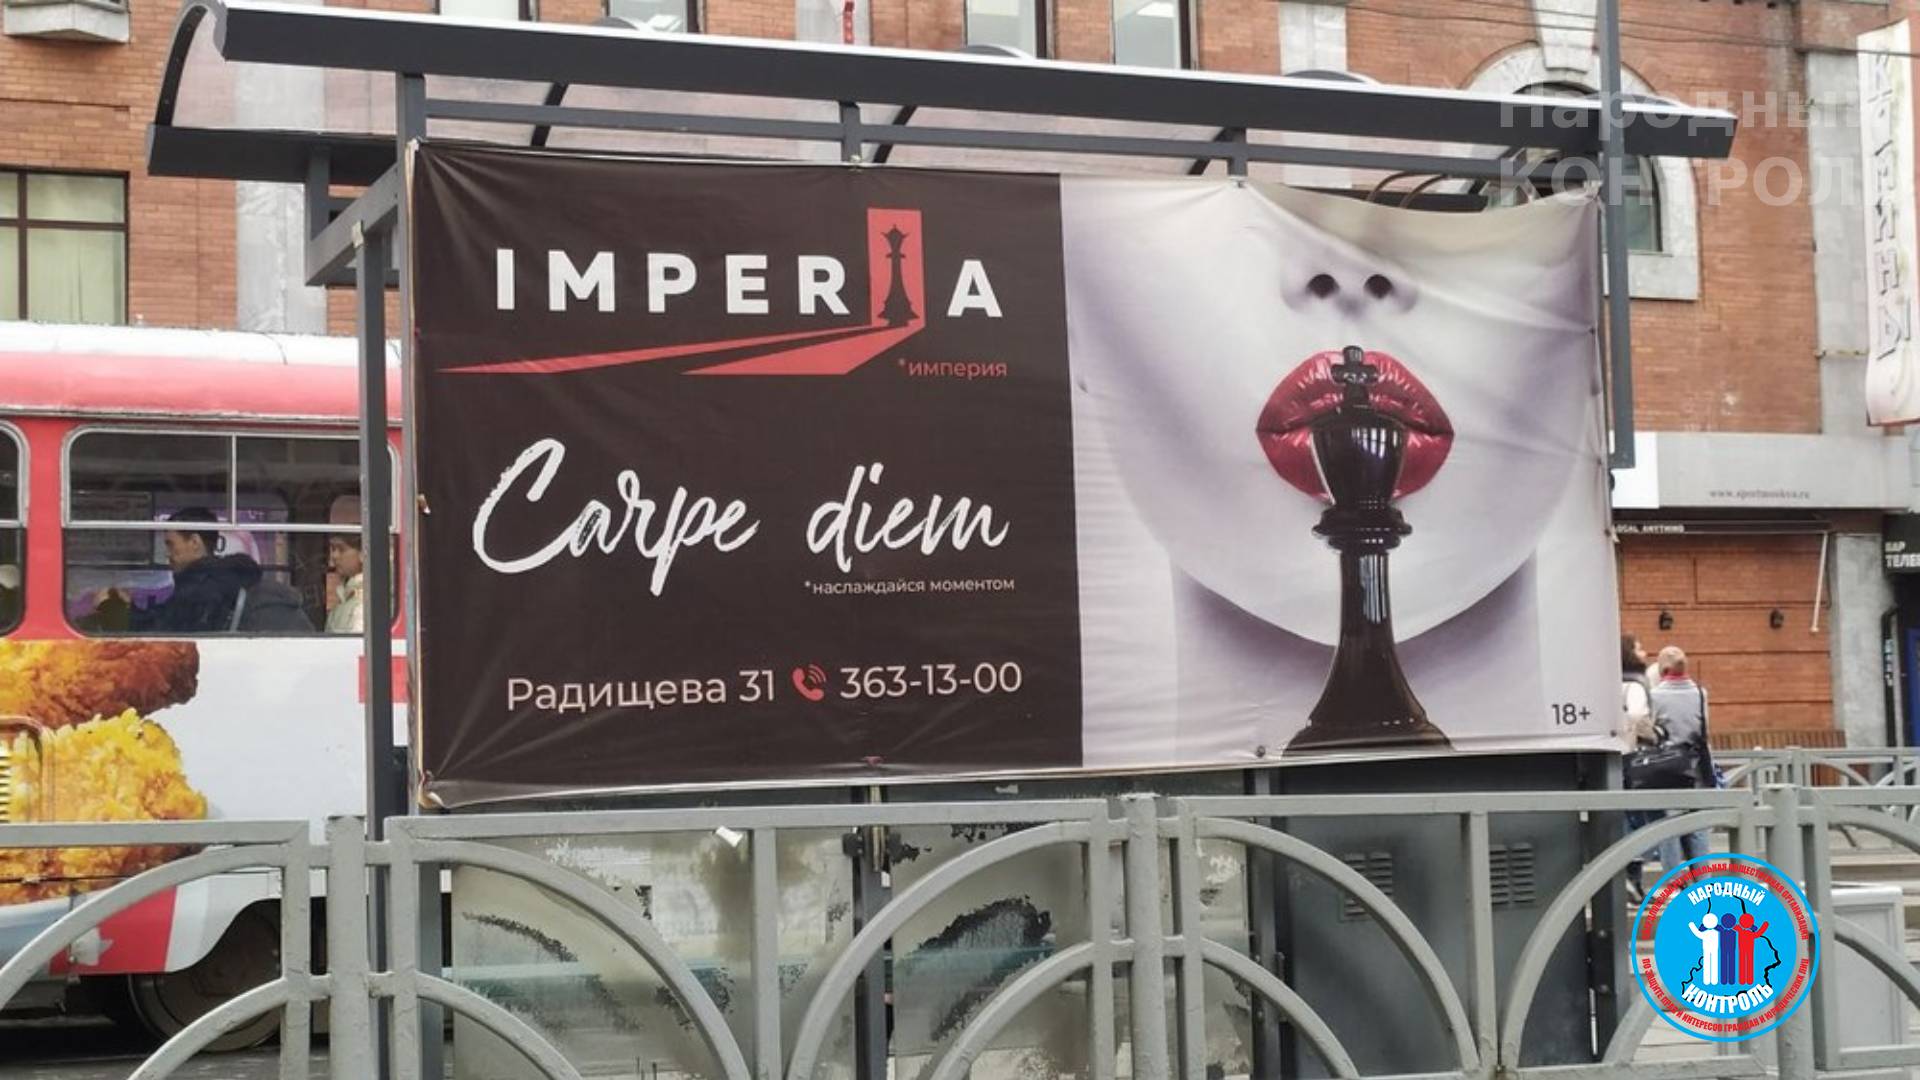 Непотребщина в центре города: бордель Империя не прекращает рекламный произвол